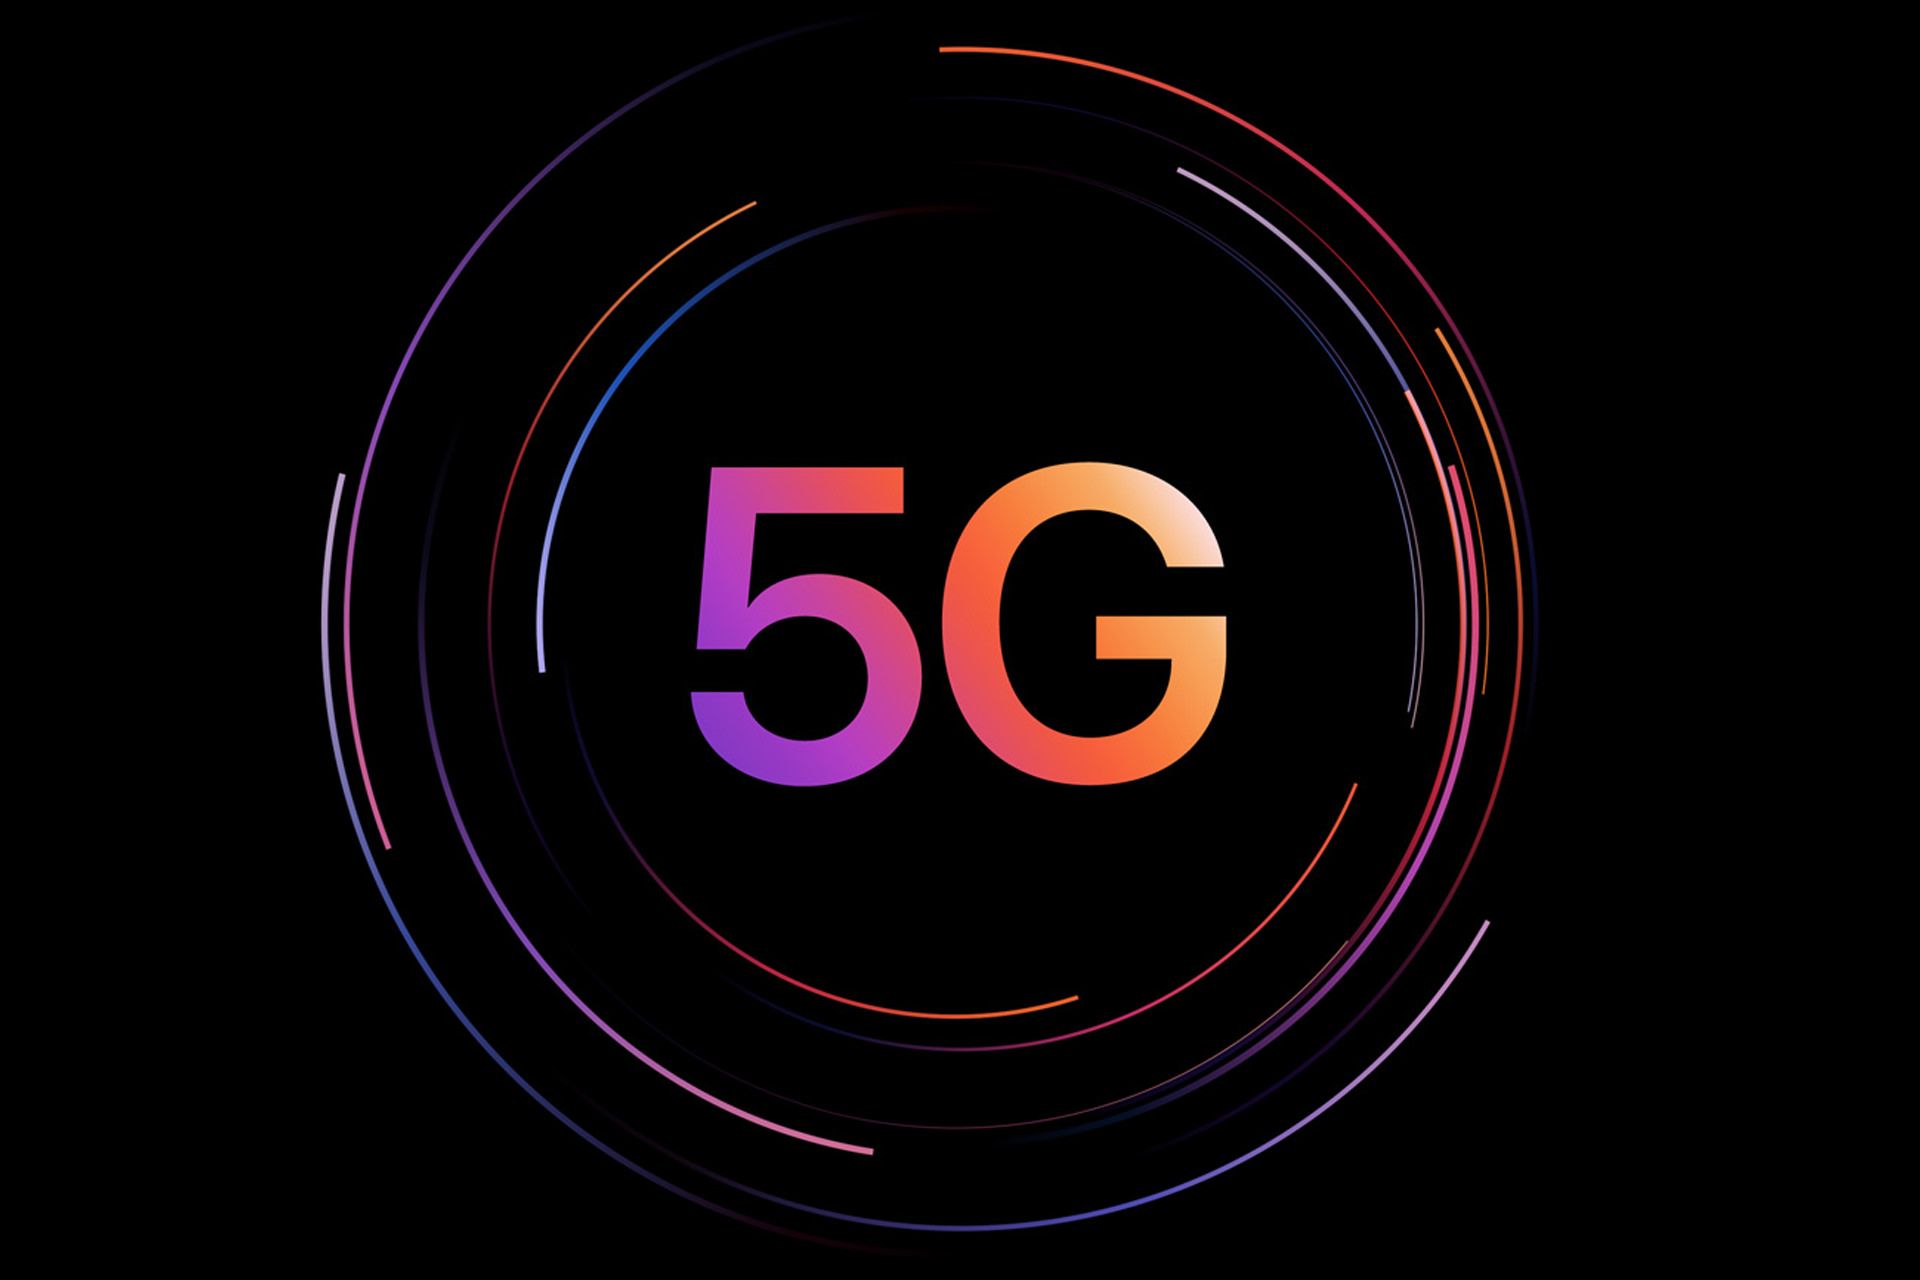 لوگو فناوری 5G در صفحه رسمی آیپد پرو 2021 در سایت اپل